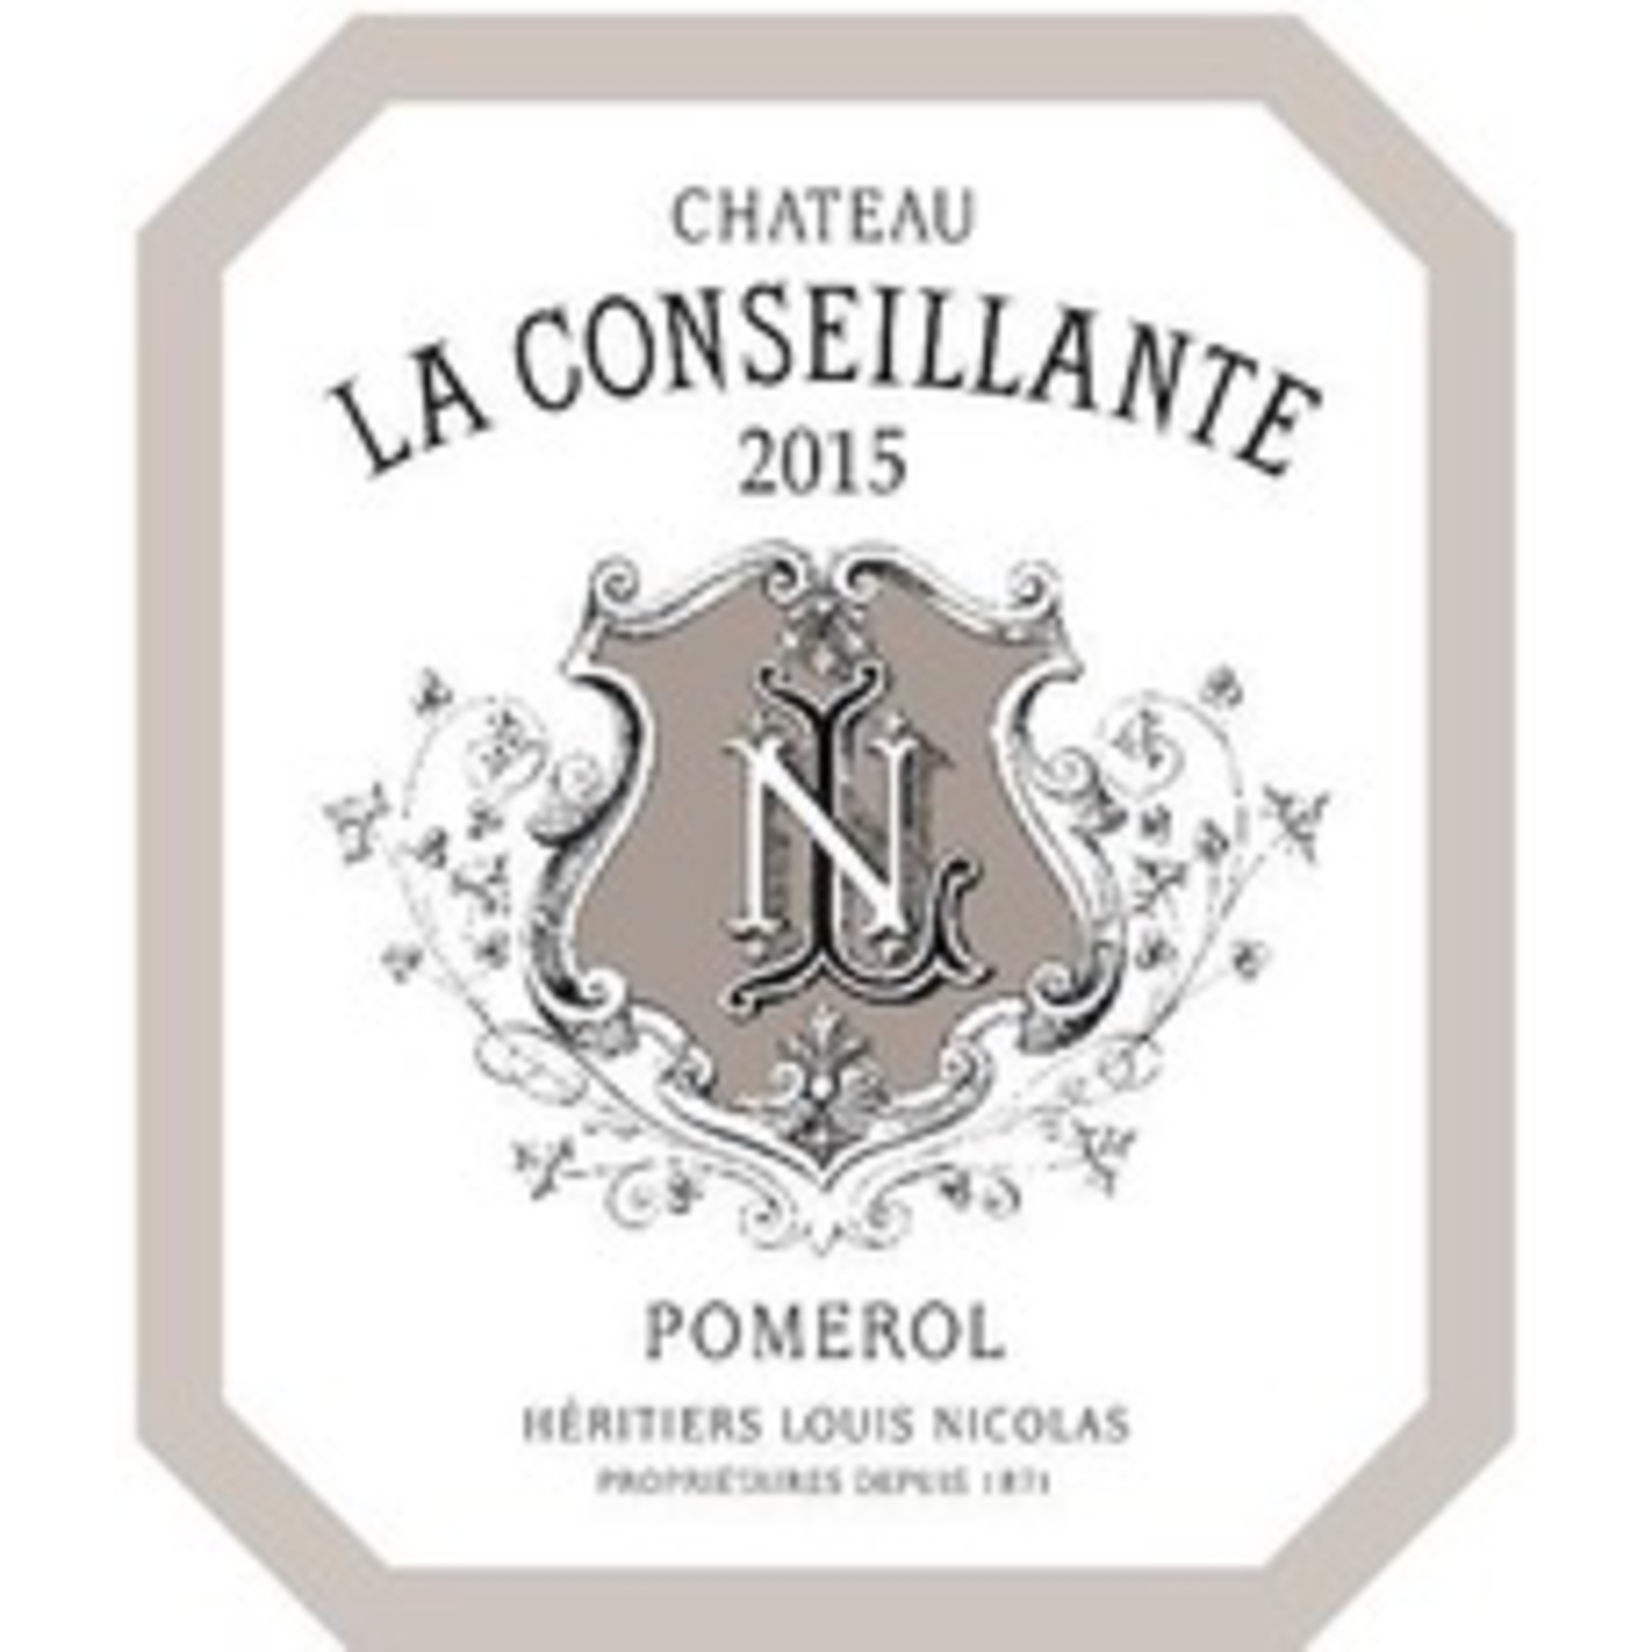 Wine Chateau La Conseillante Pomerol 2015